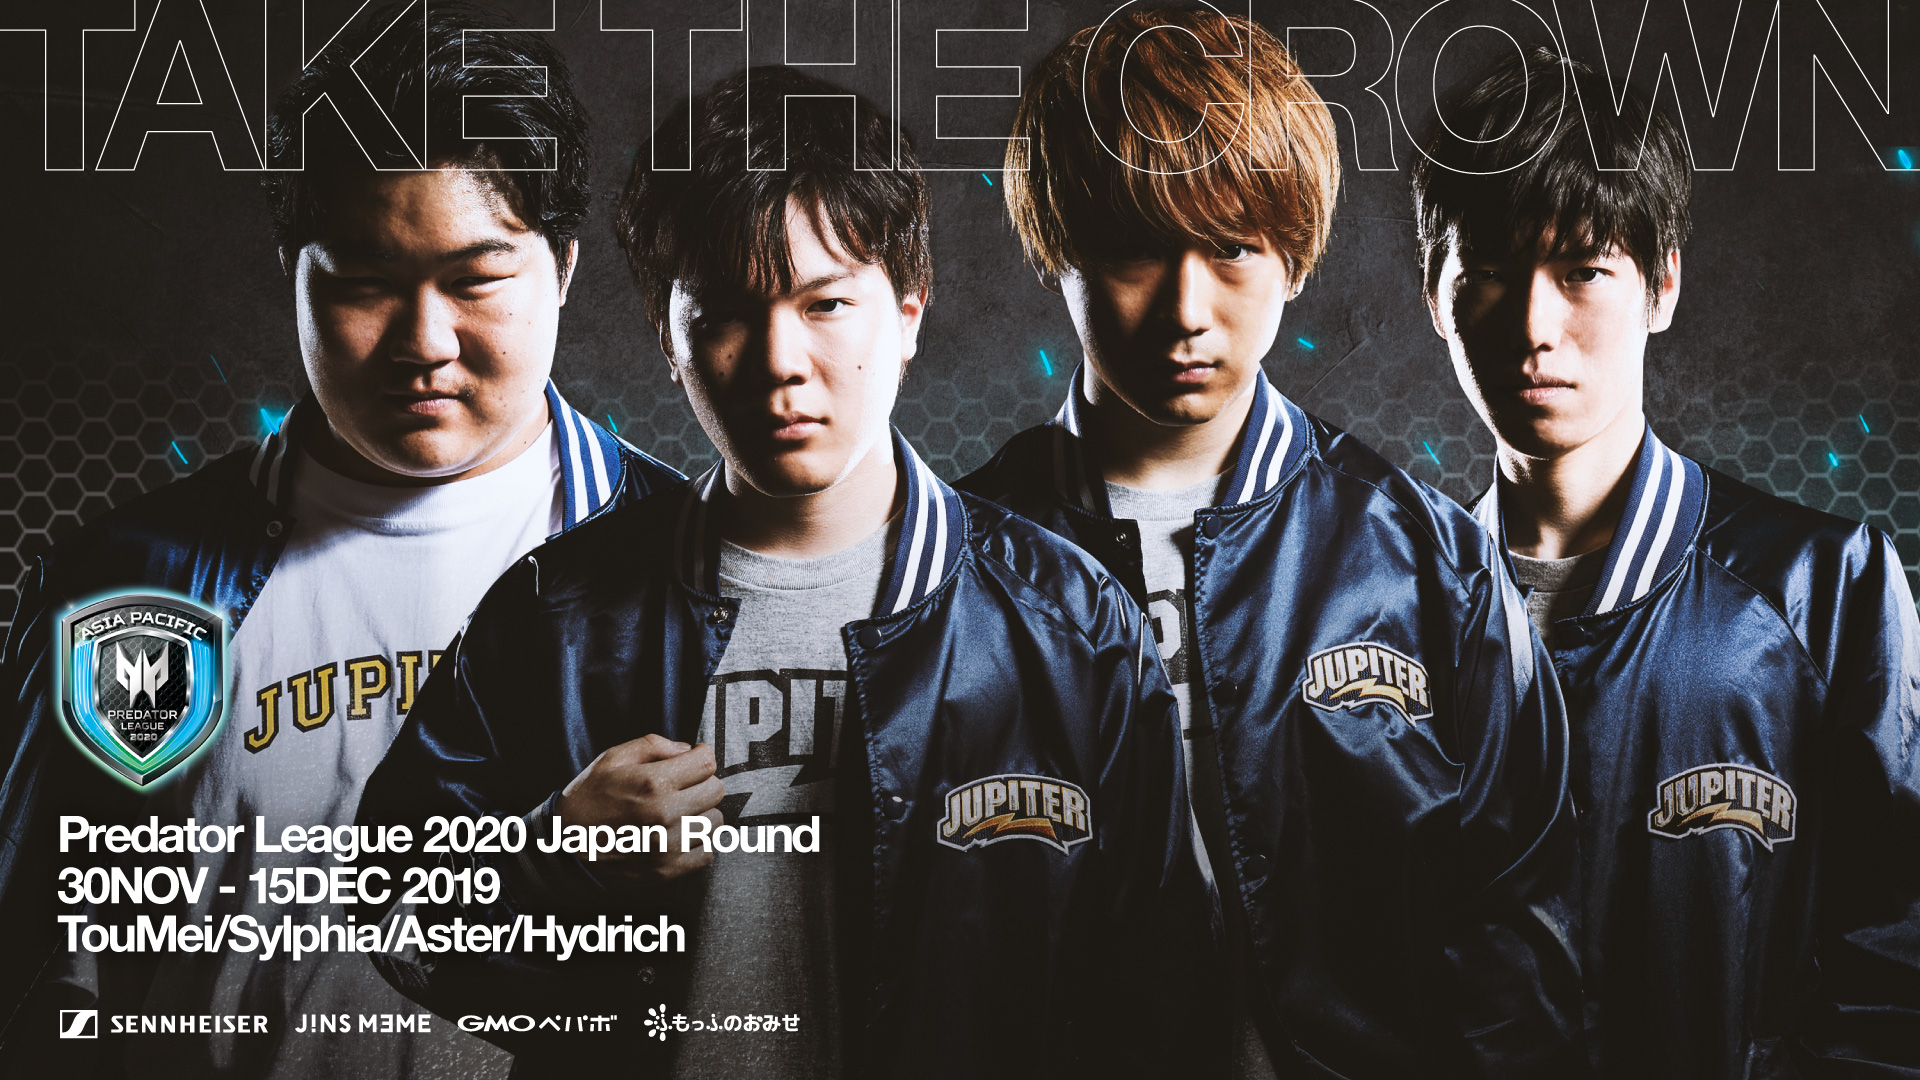 11月30日から開催の『Predator League 2020 Japan Round』に「JUPITER NOVA」が出場 | See below for the English News